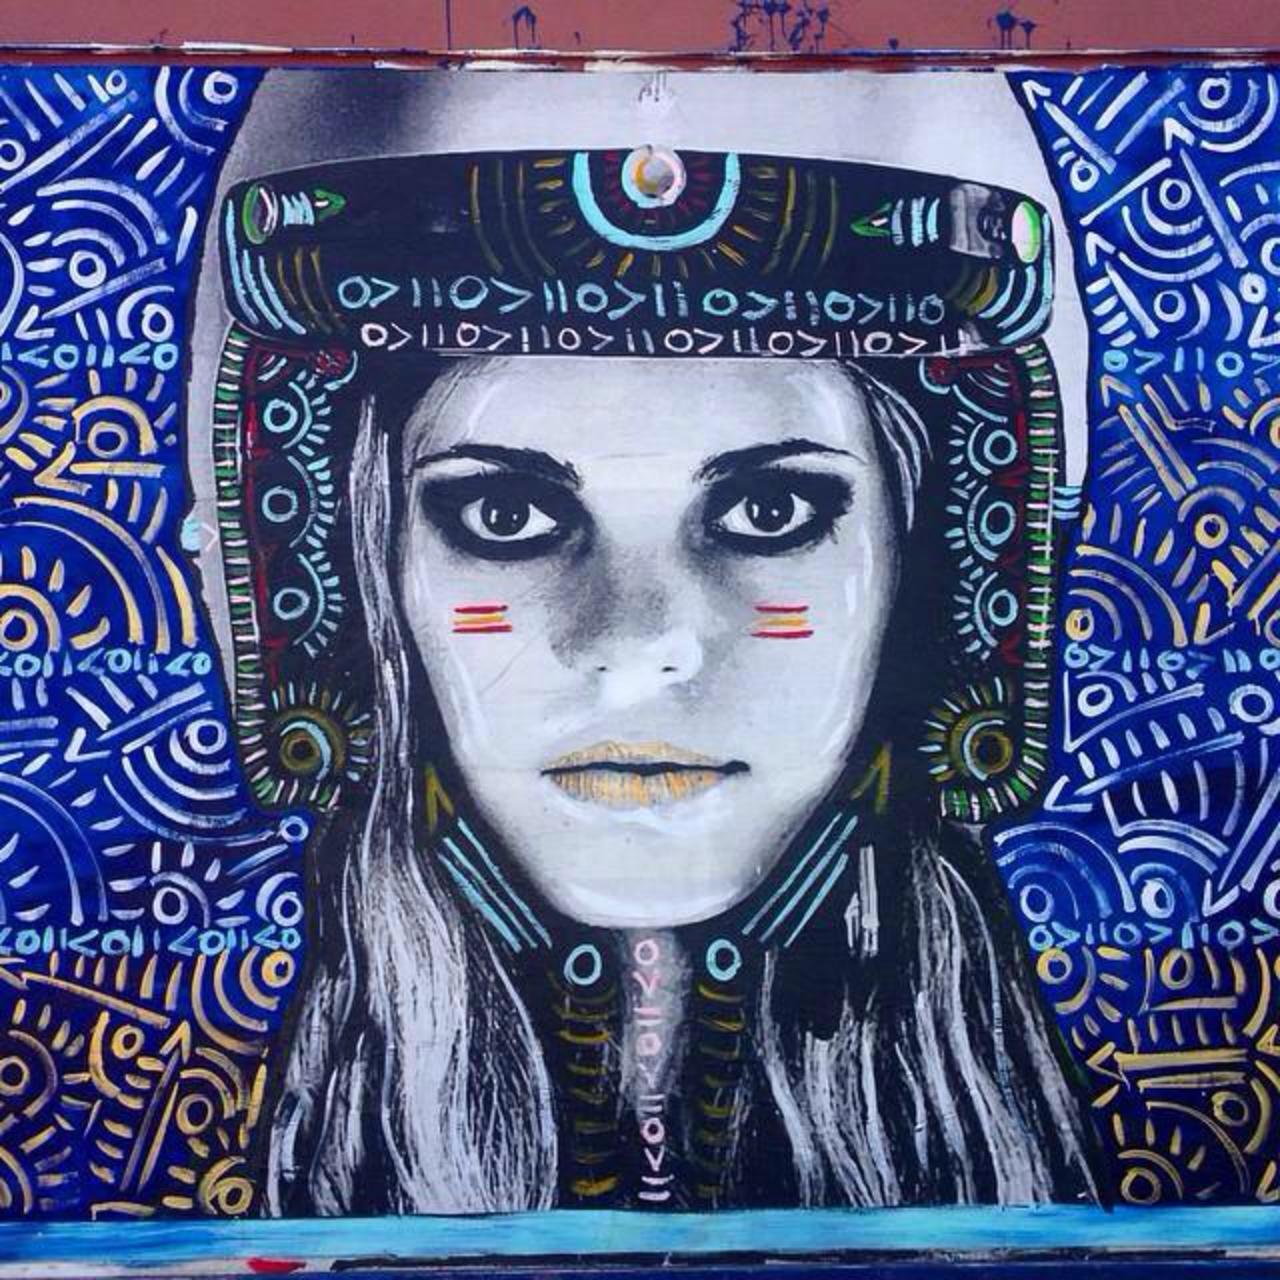 Street Art by Kelcey Fisher in LA
Photo by djcatnap

#art #arte #graffiti #streetart http://t.co/vfJLqAuvit